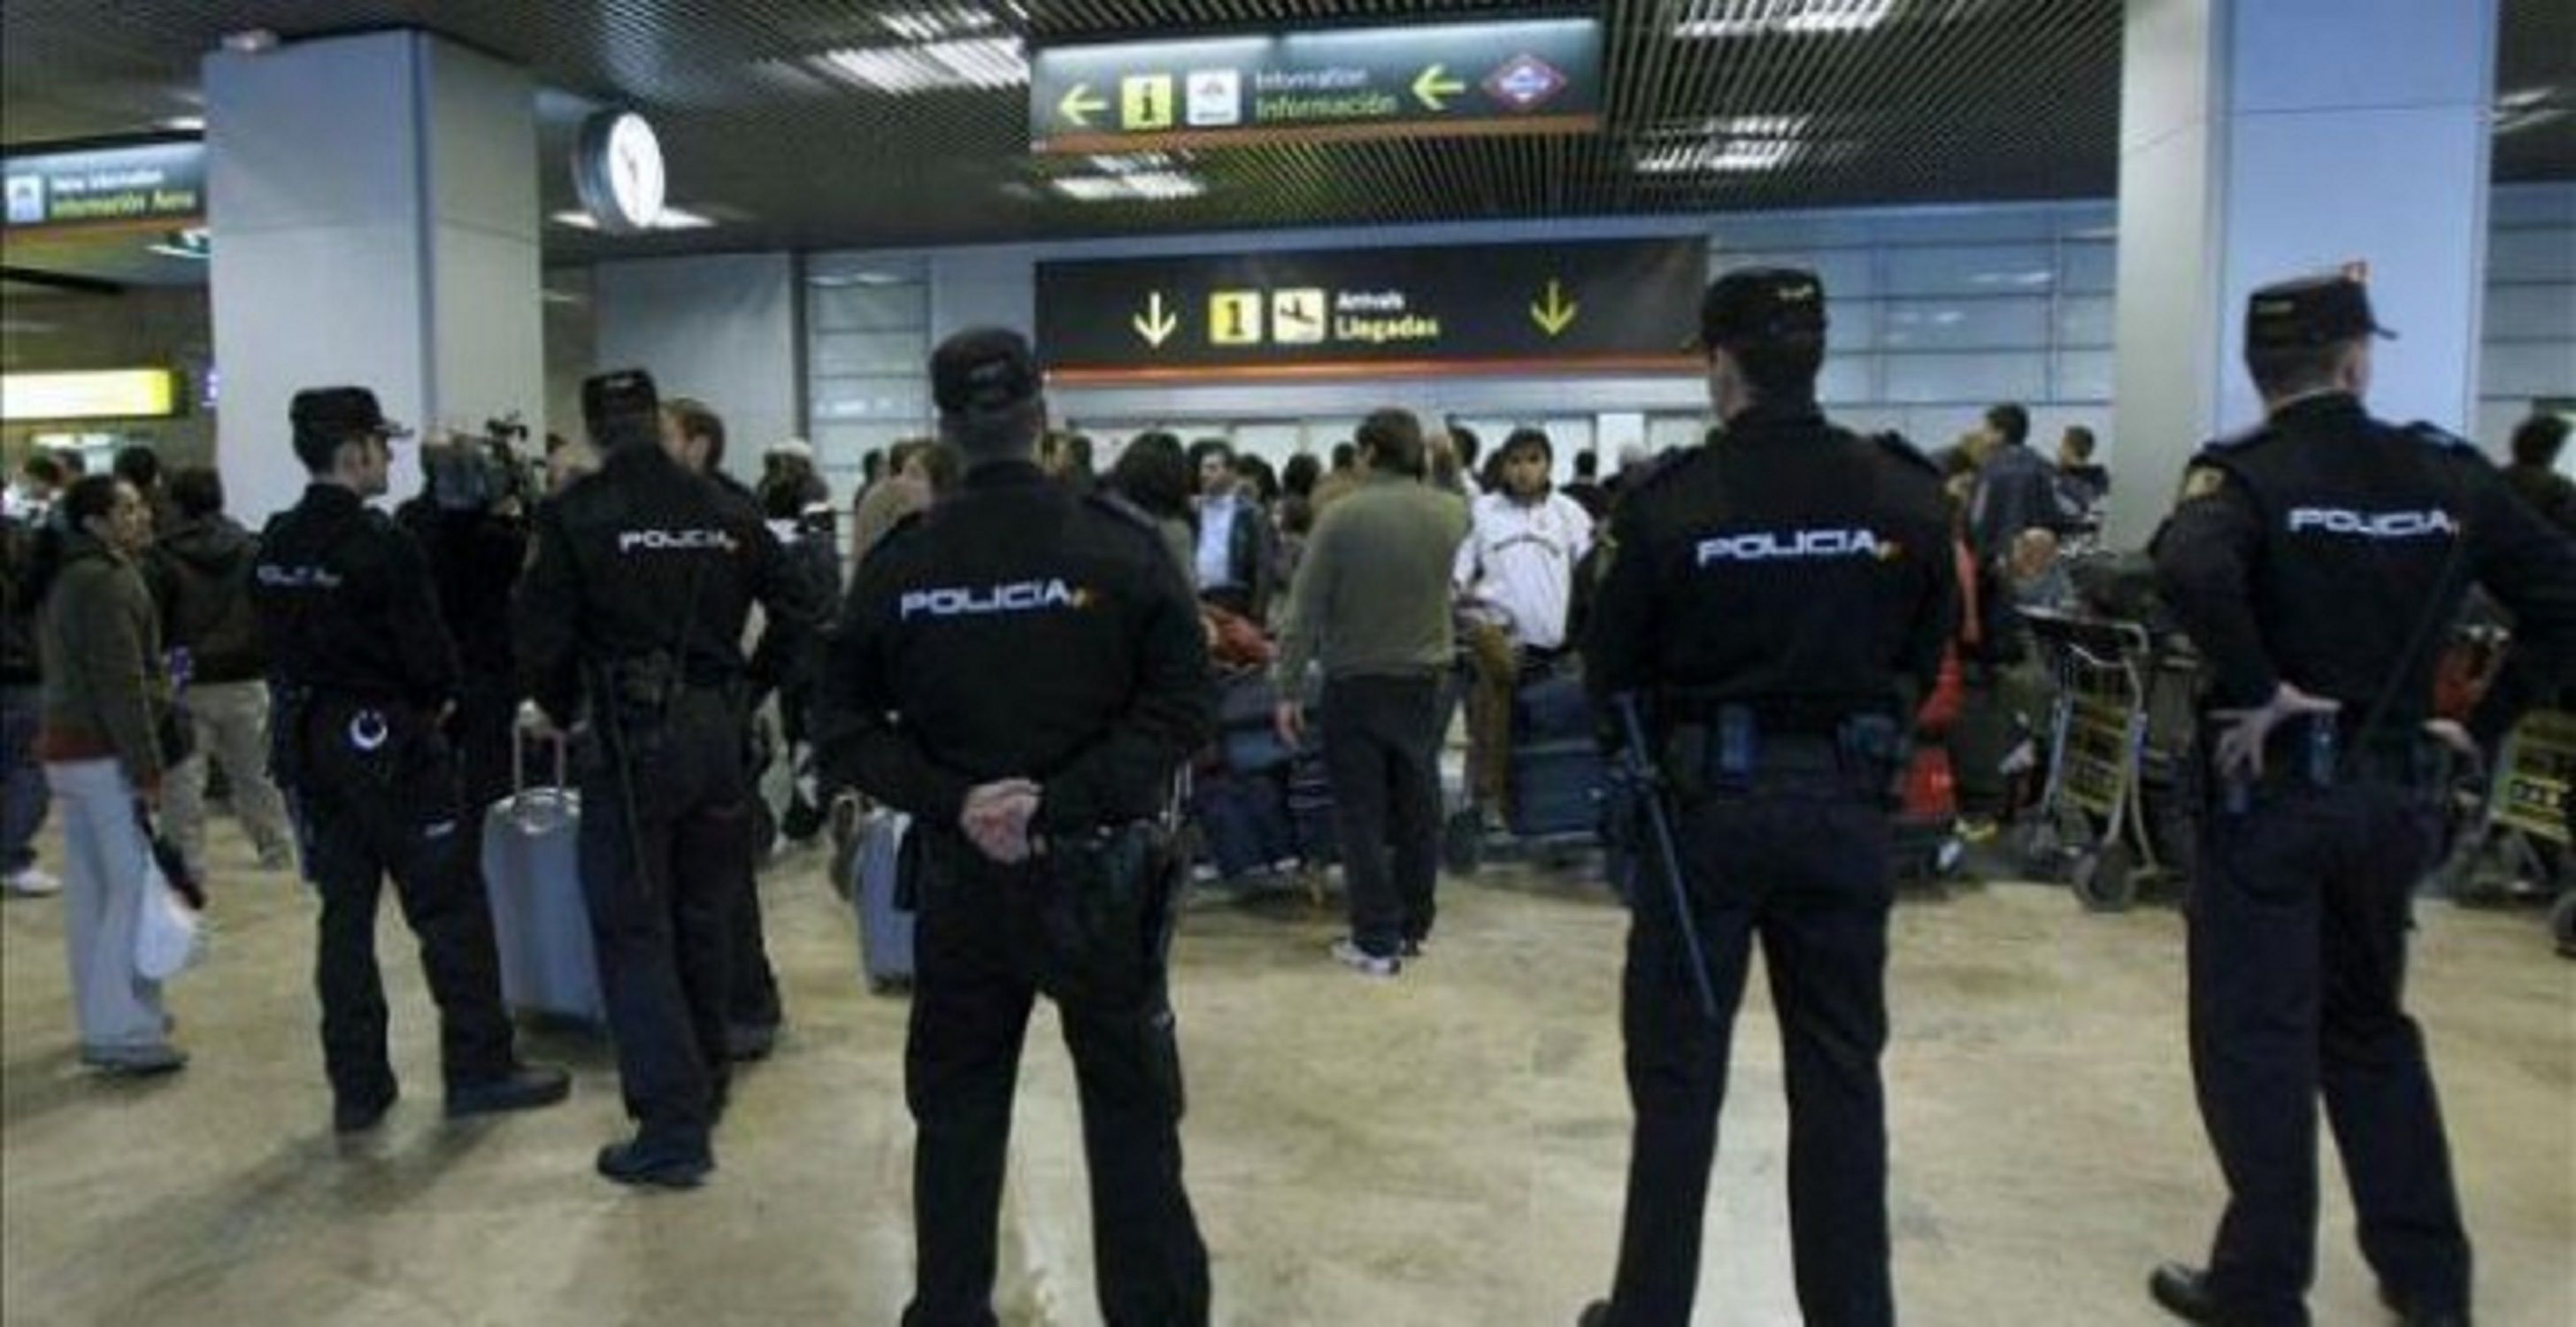 Policia Nacional en l'aeroport / EFE